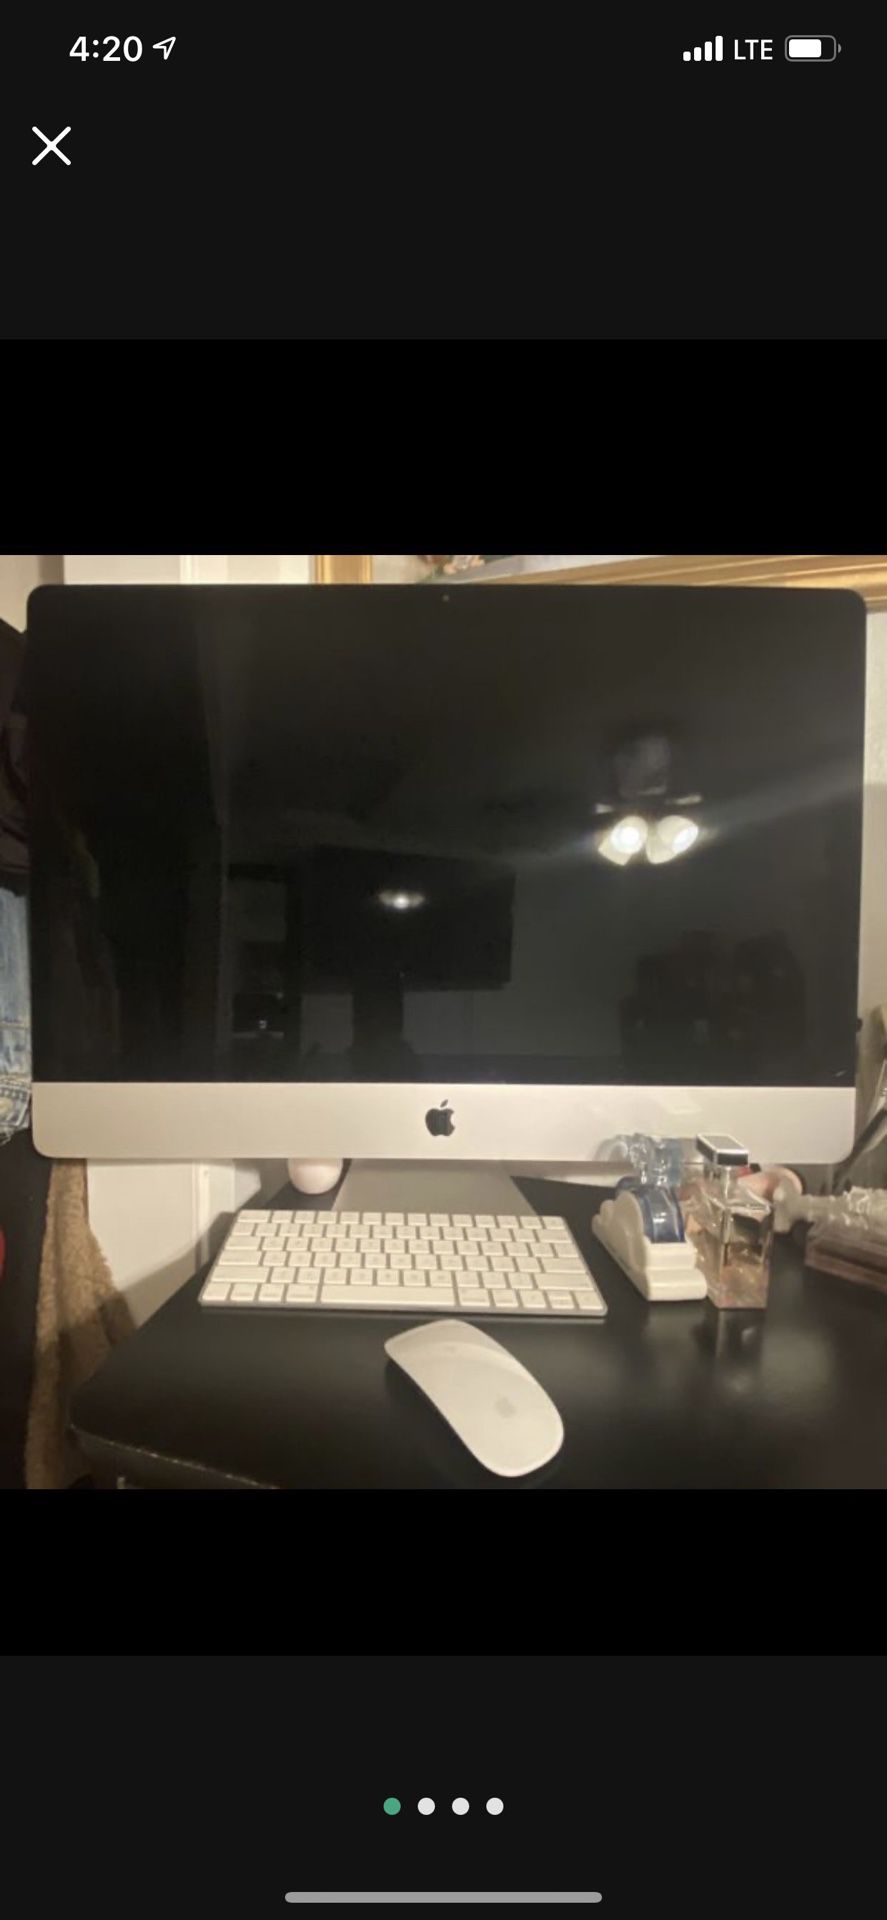 iMac (Retina 5k, 27-inch 2017)